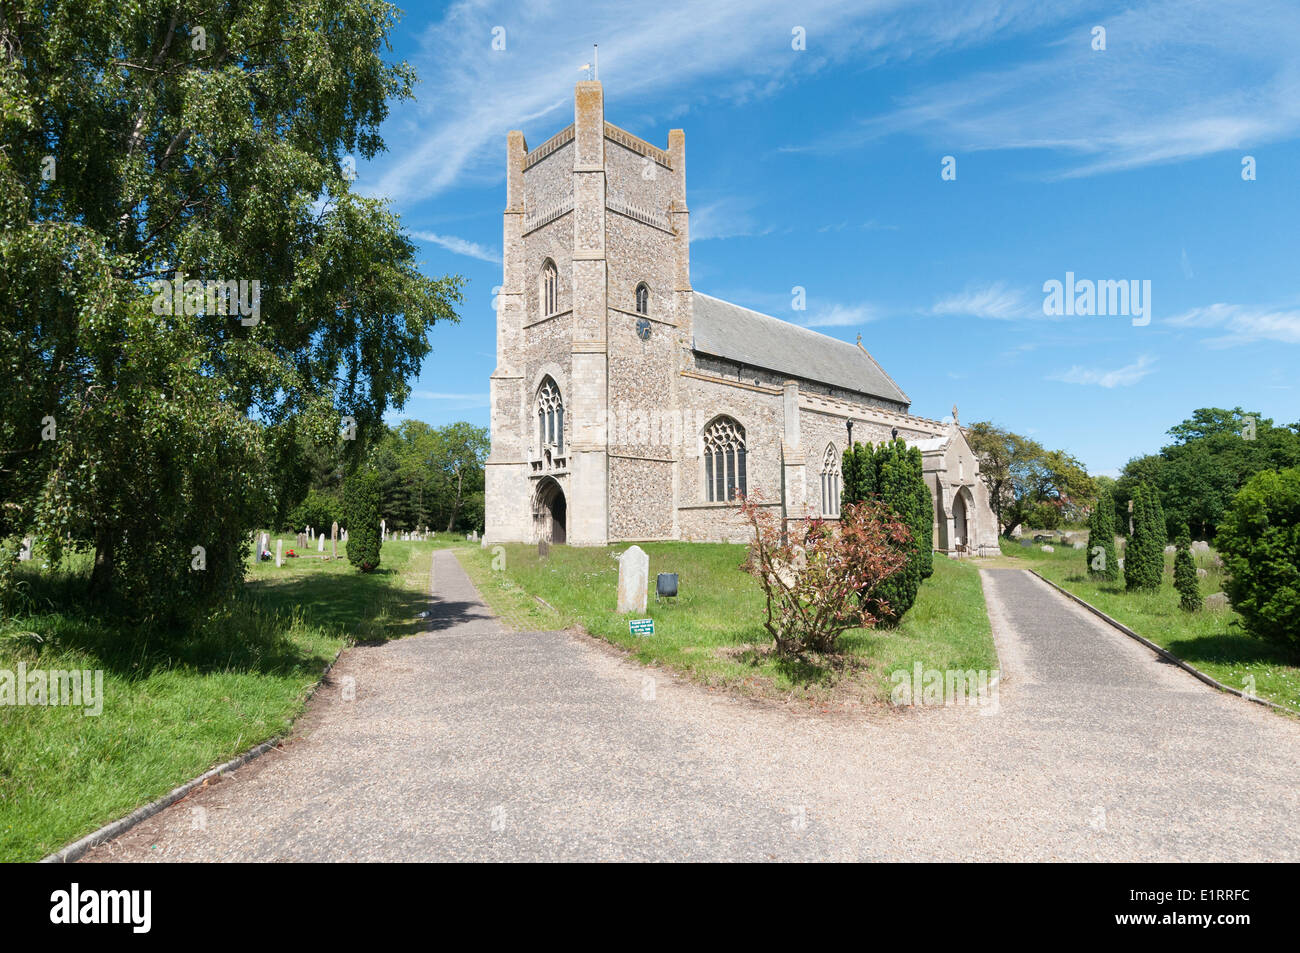 England, Orford: Parish church of St Bartholomew Stock Photo